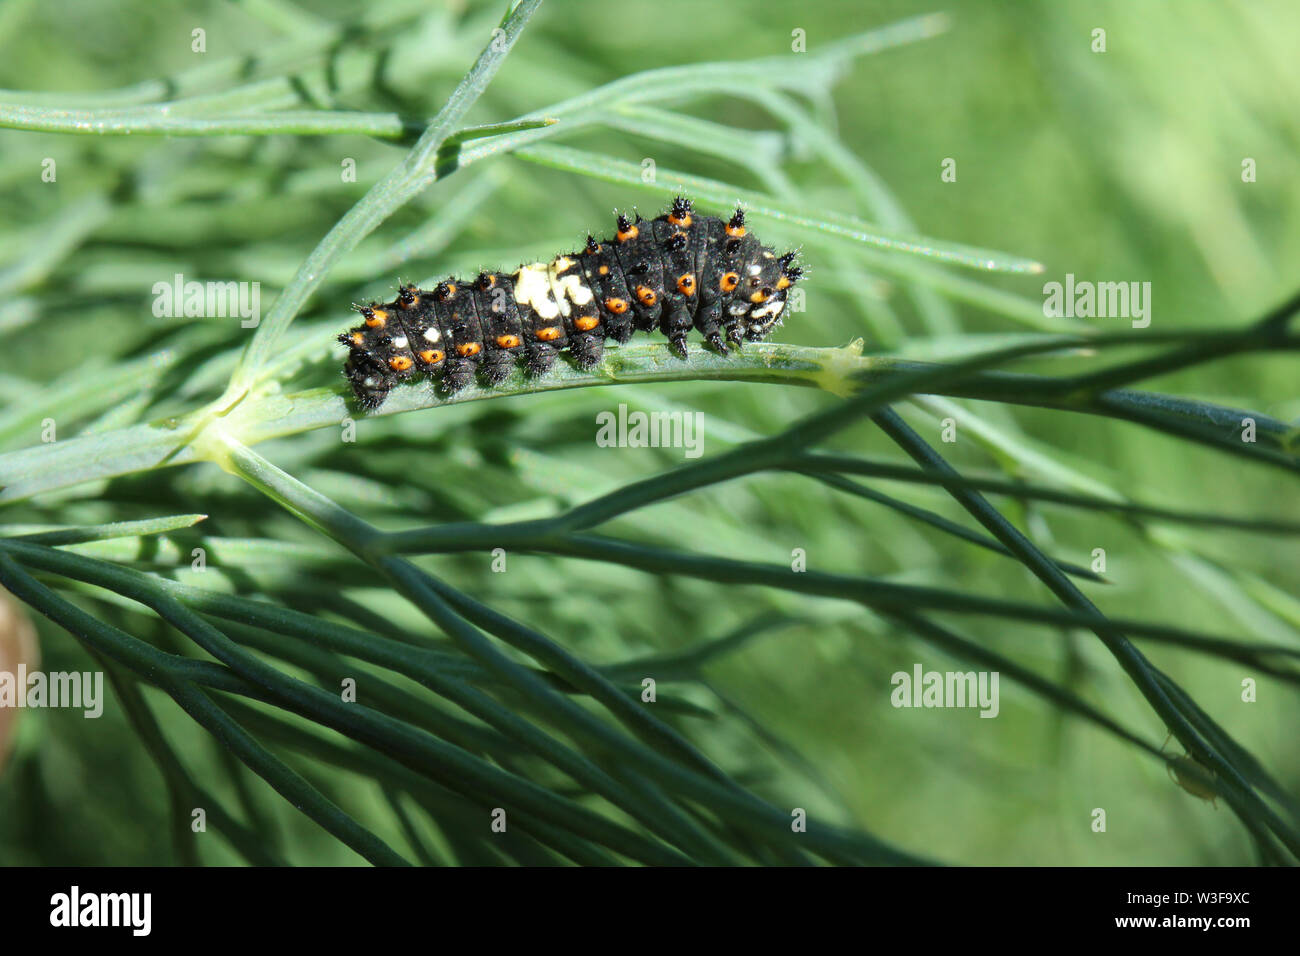 Premier stade de Caterpillar Swallowtail noir manger certaines dill dans le jardin. Banque D'Images